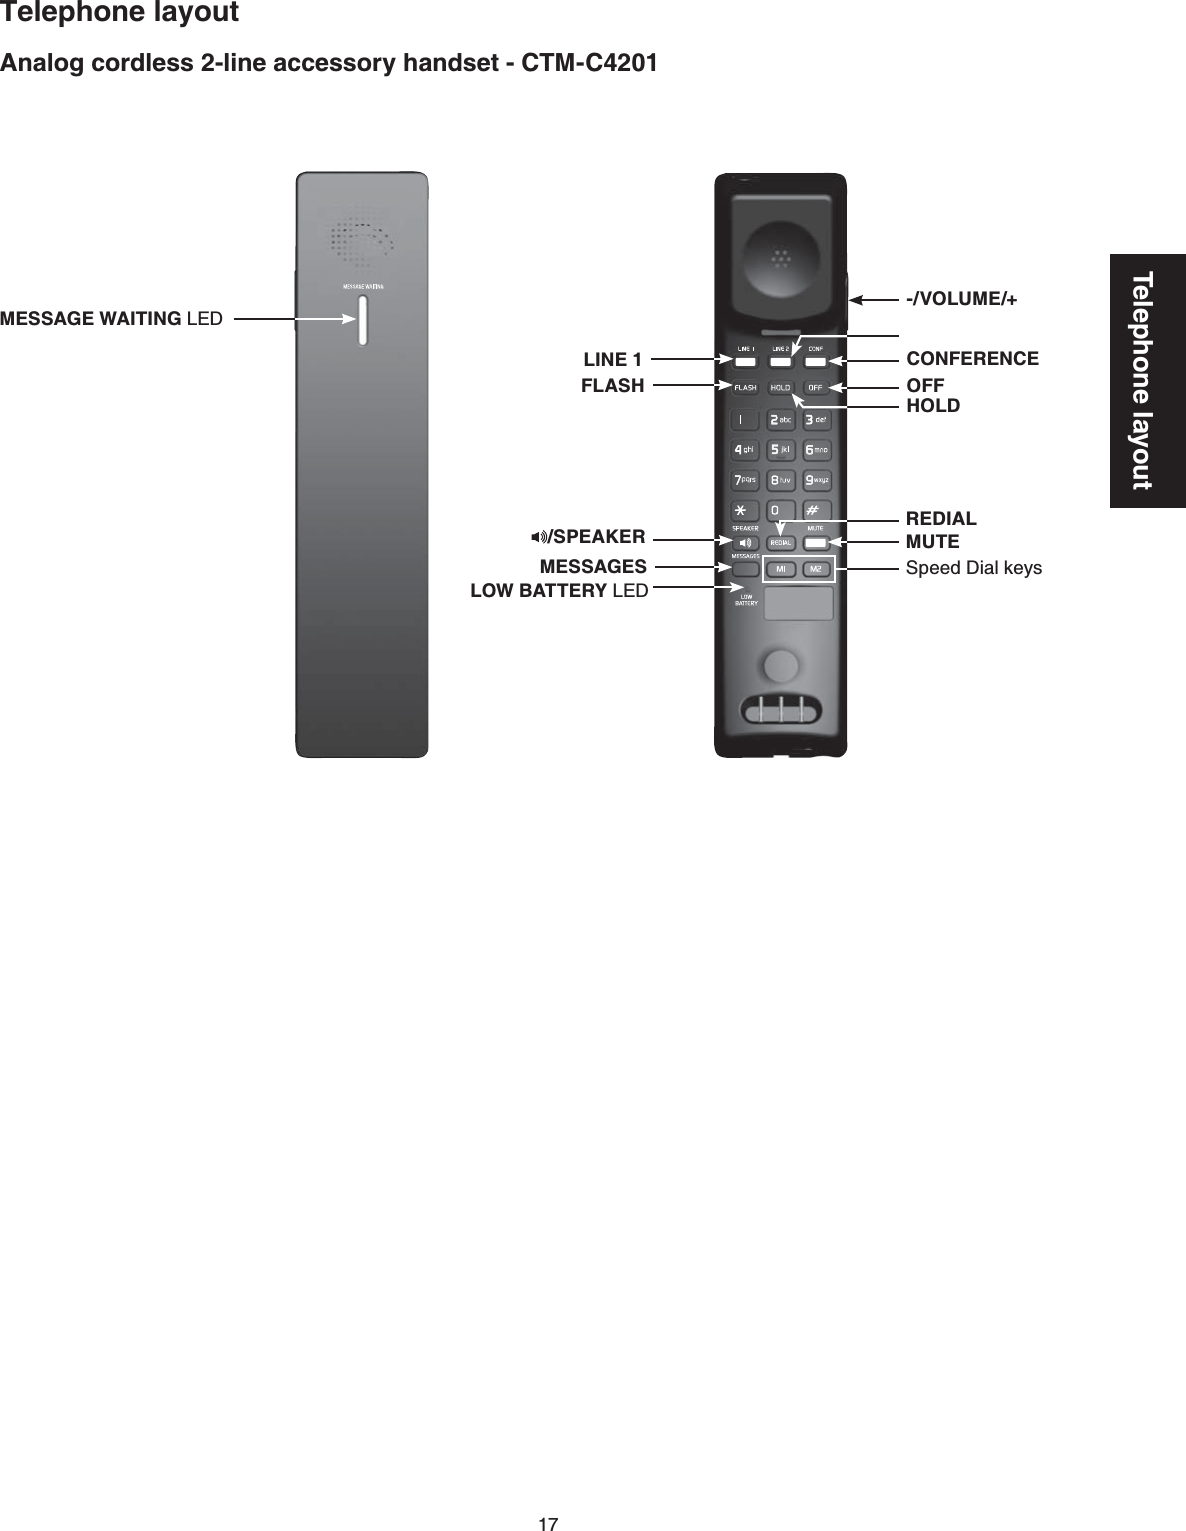 17Telephone layoutAnalog cordless 2-line accessory handset - CTM-C4201Telephone layoutMESSAGE WAITING LEDLINE 1REDIALHOLDOFFFLASHMESSAGESMUTE-/VOLUME/+/SPEAKERLOW BATTERY LEDSpeed Dial keysCONFERENCE